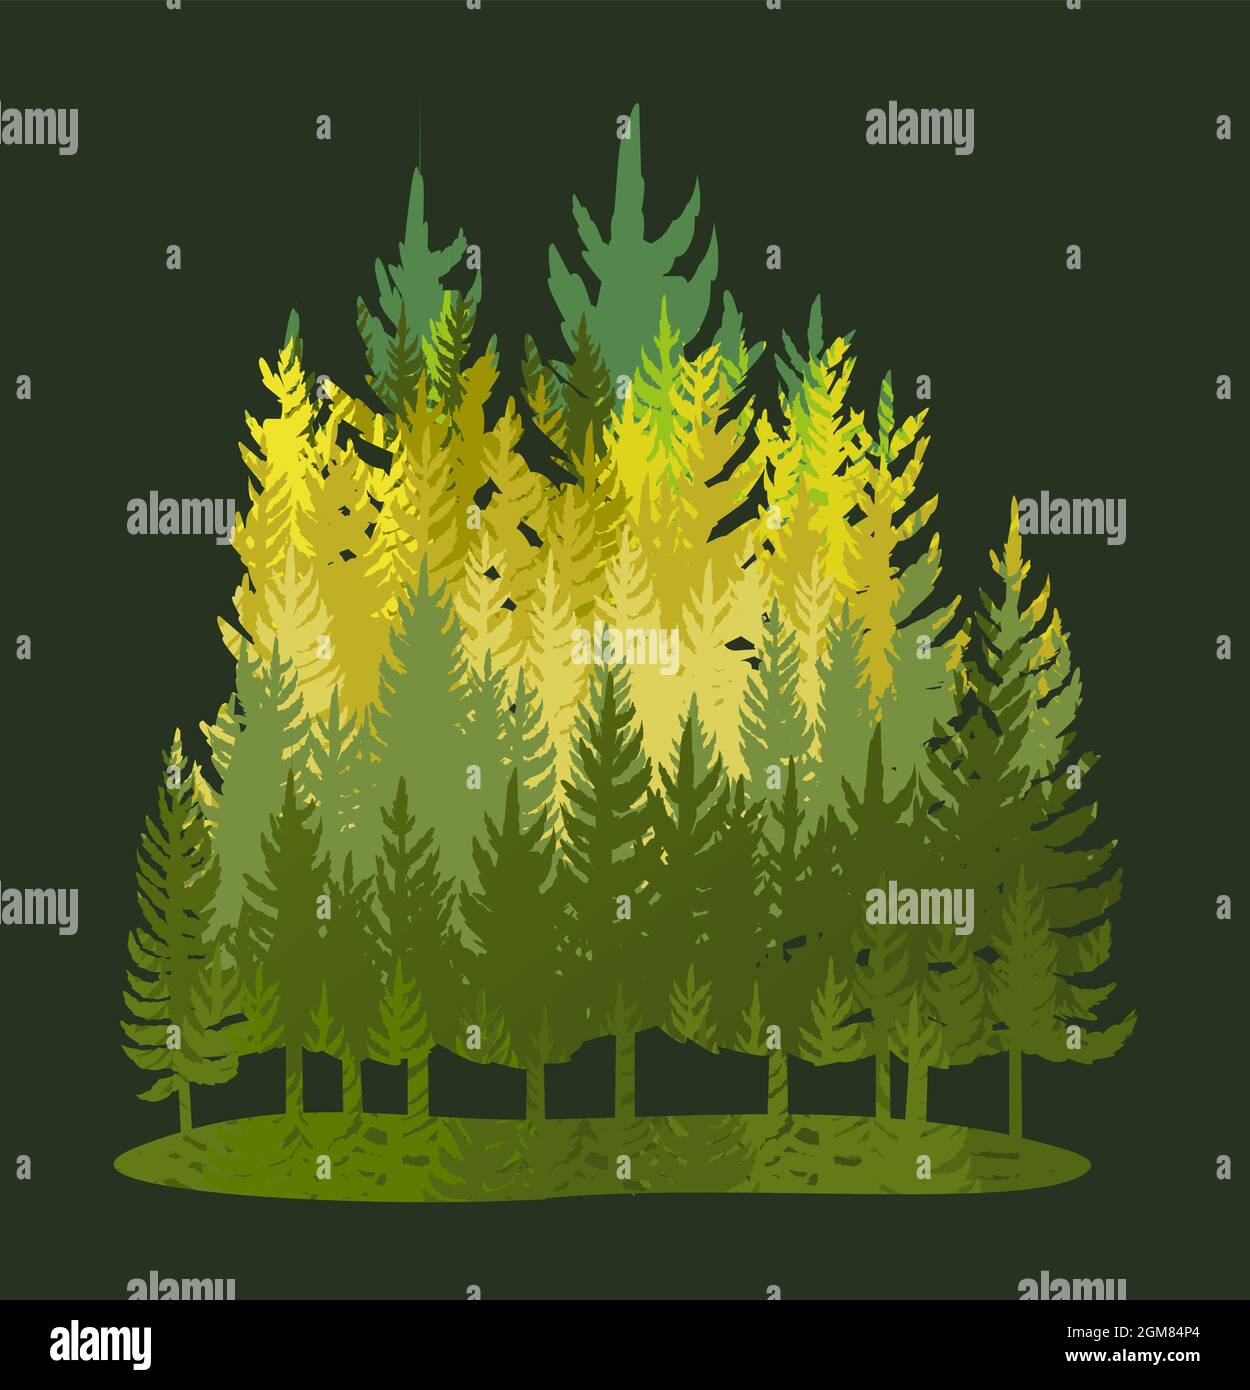 Forest Silhouette. Landschaft mit Nadelbäumen. Wunderschöne Aussicht bei Nacht. Kiefern- und Fichtenbäume. Sommer Naturlandschaft. Illustrationsvektor Stock Vektor